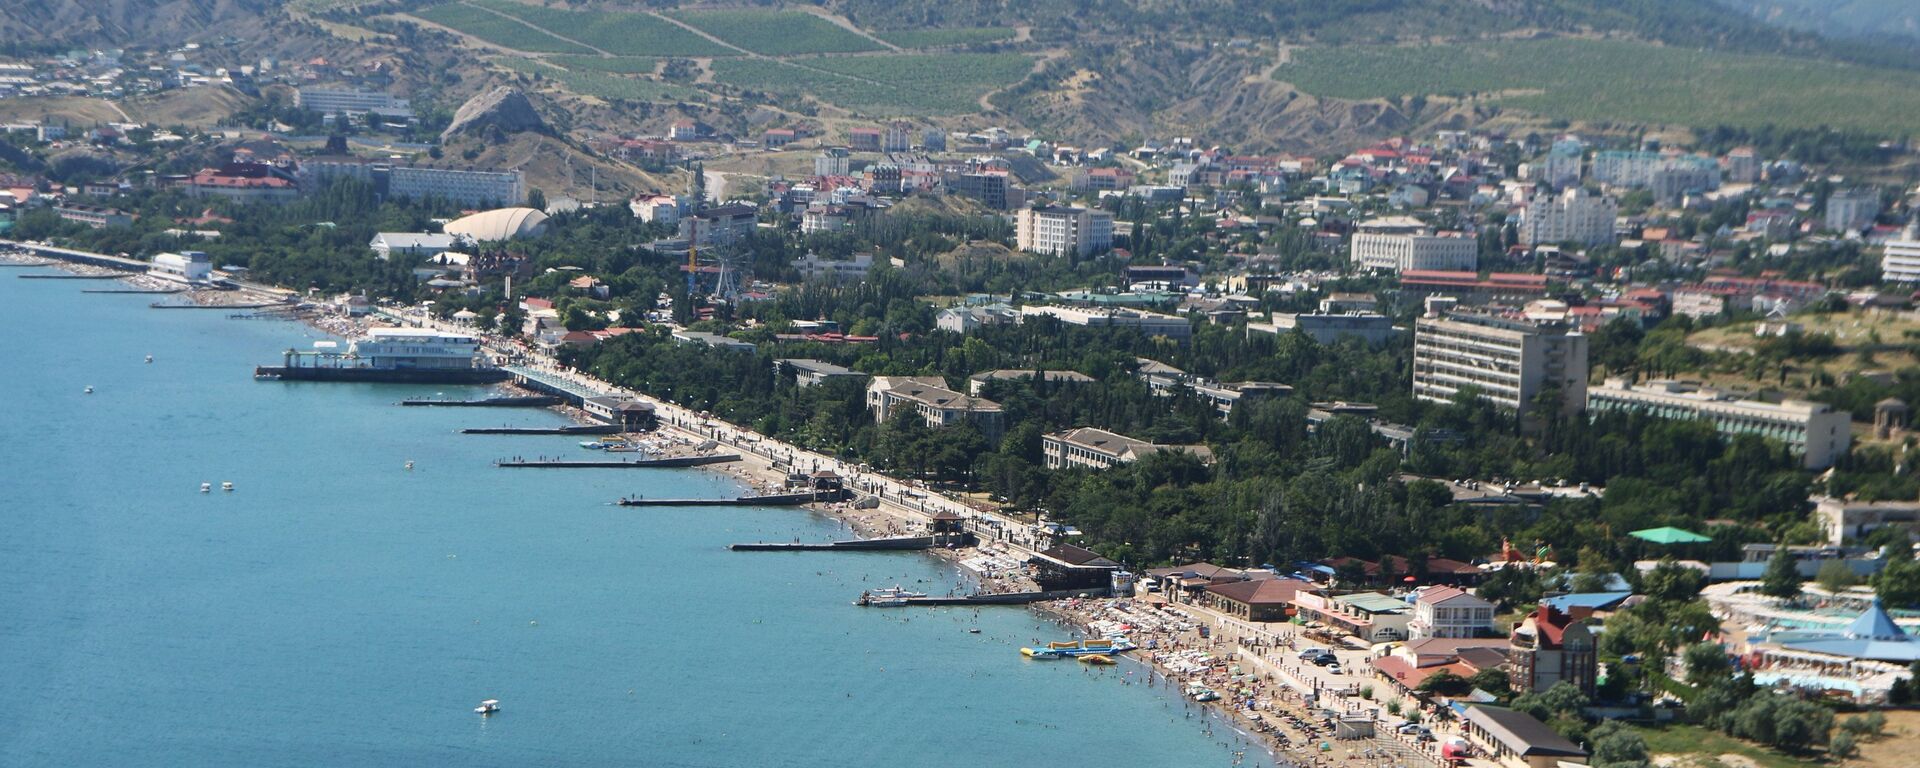 Obala Crnog mora u gradu Sudak na Krimu - Sputnik Srbija, 1920, 07.07.2021